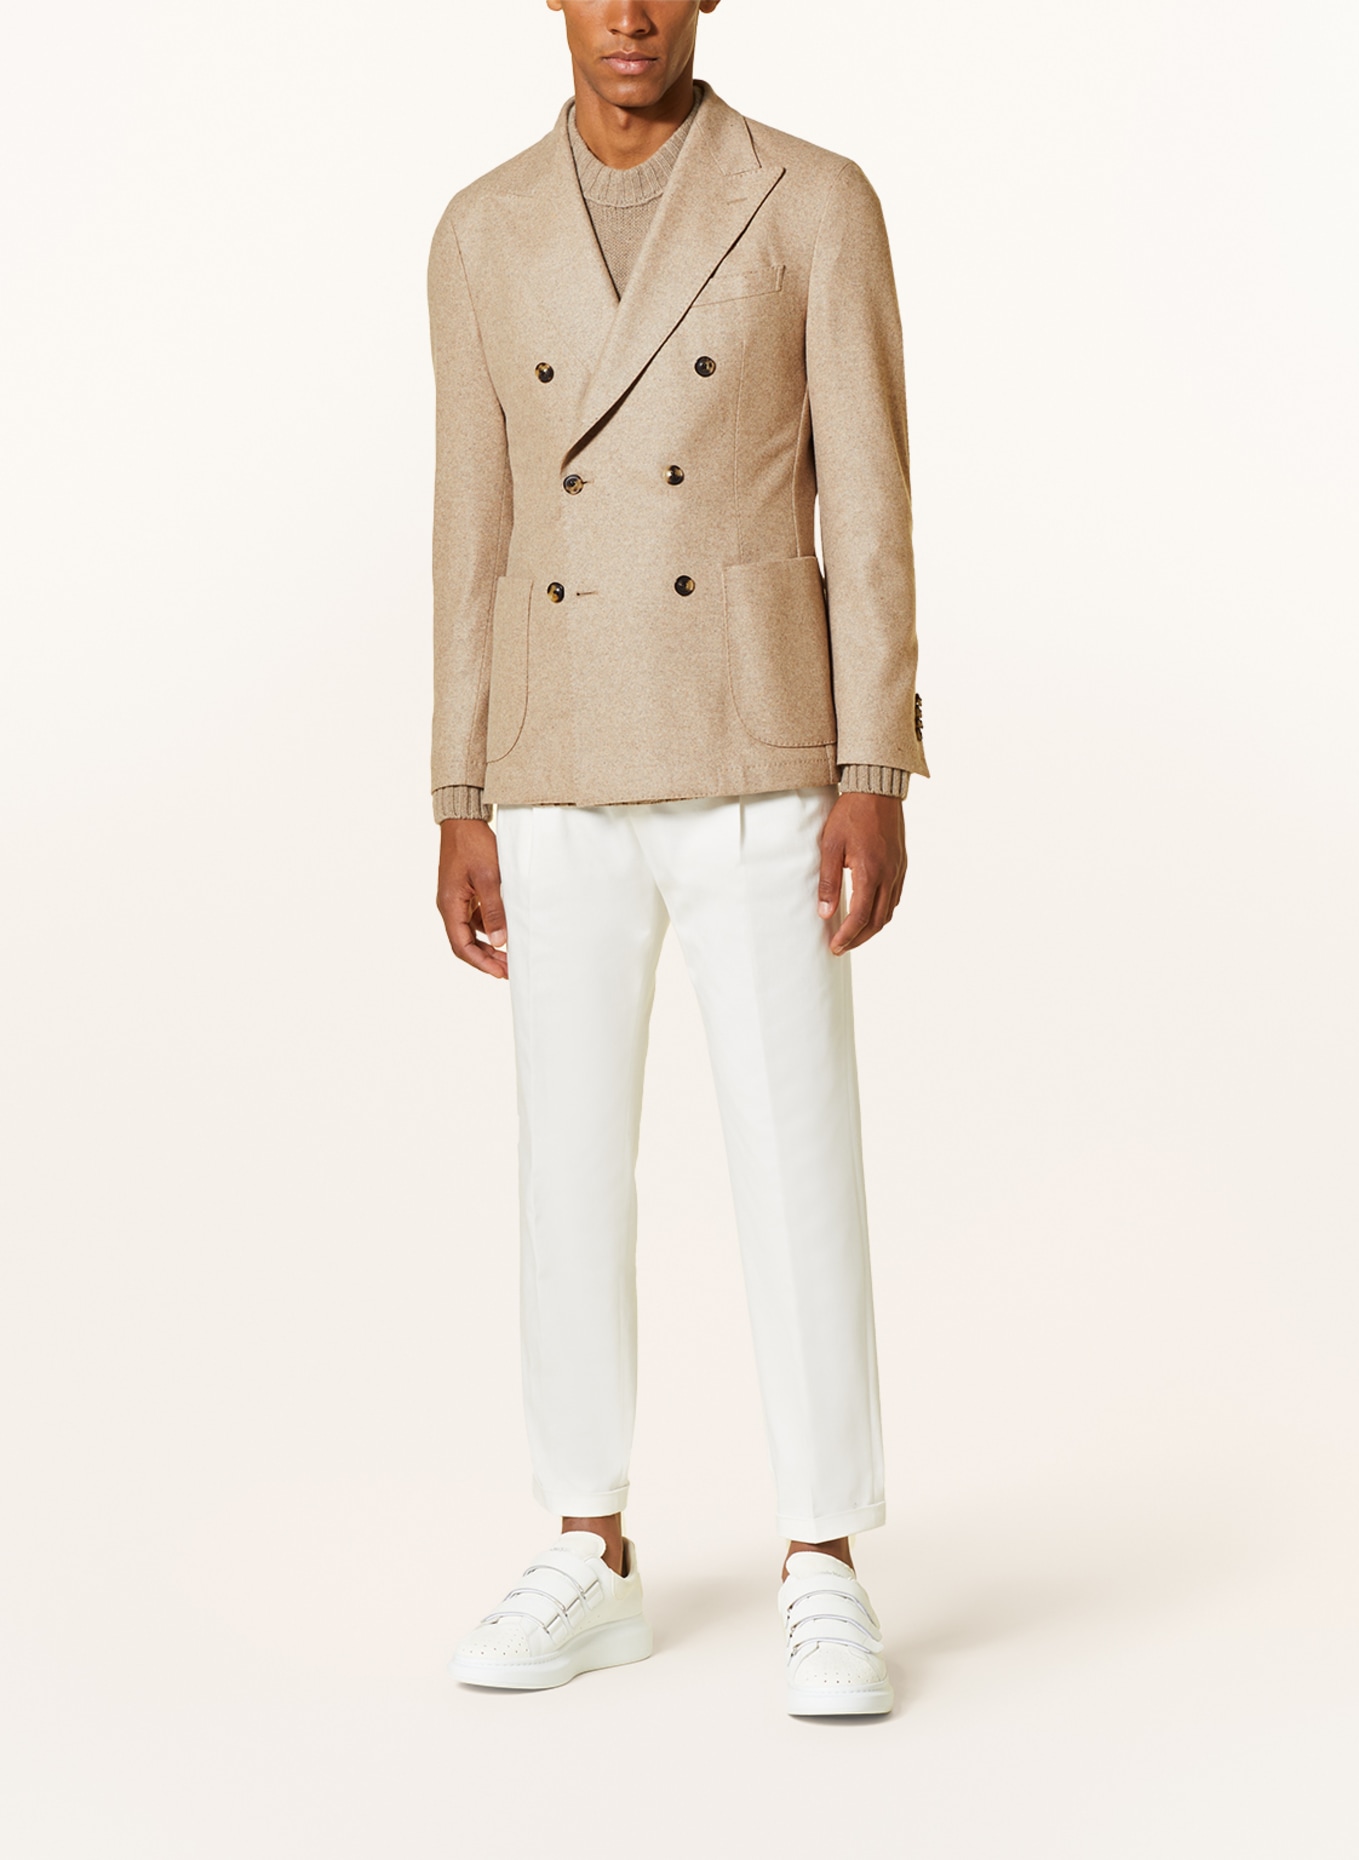 windsor. Cashmere tailored Jacket SATINO slim fit, Color: BEIGE (Image 2)